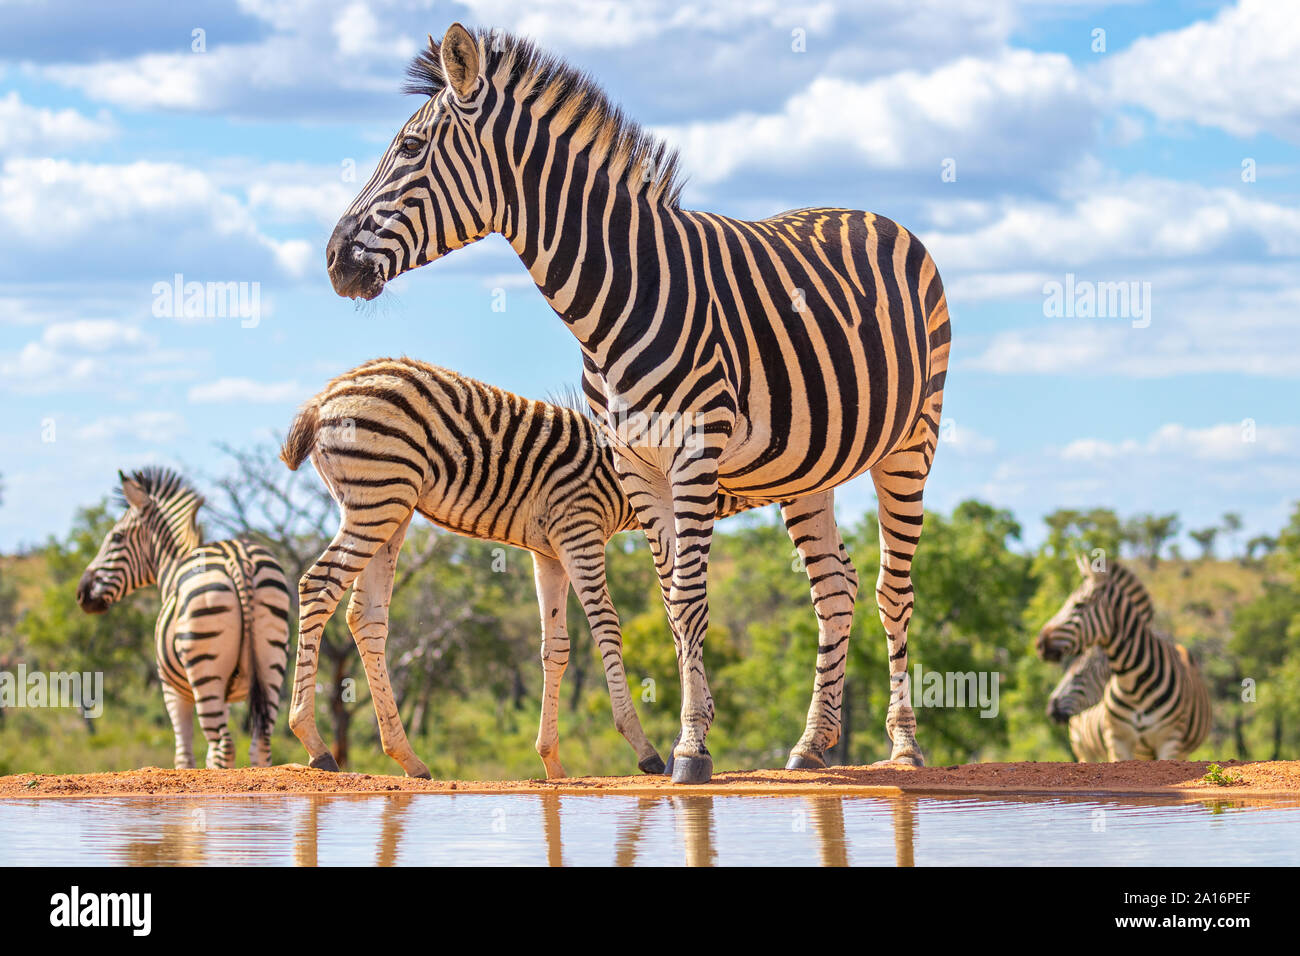 Ein Zebra (Equus quagga) an einer Wasserstelle trinken, Welgevonden Game Reserve, Südafrika. Stockfoto